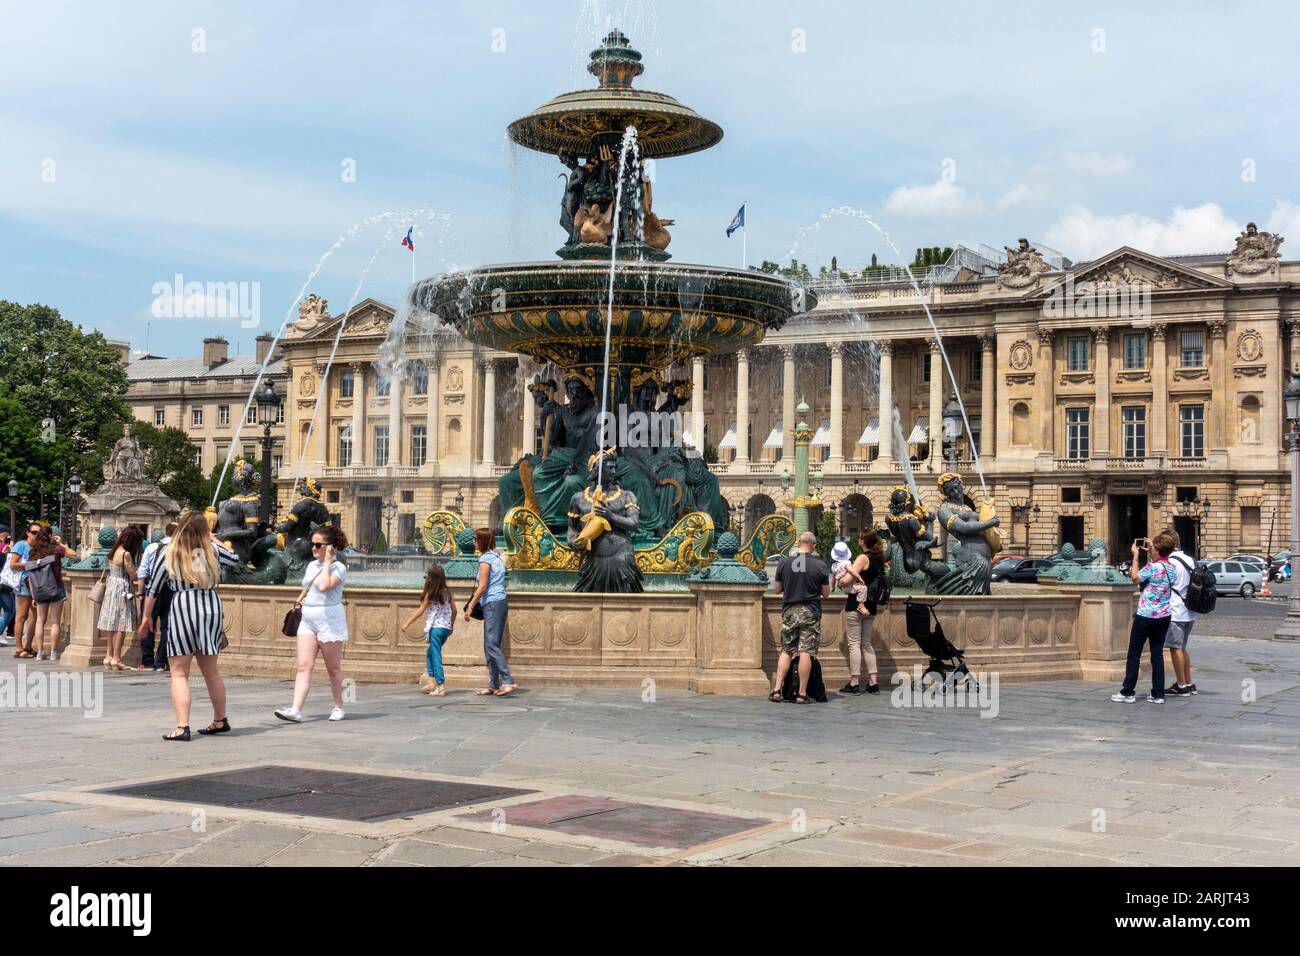 Fontaine des fleuri Sur Place de la Concorde, quartier des Tuileries, Paris, France Banque D'Images